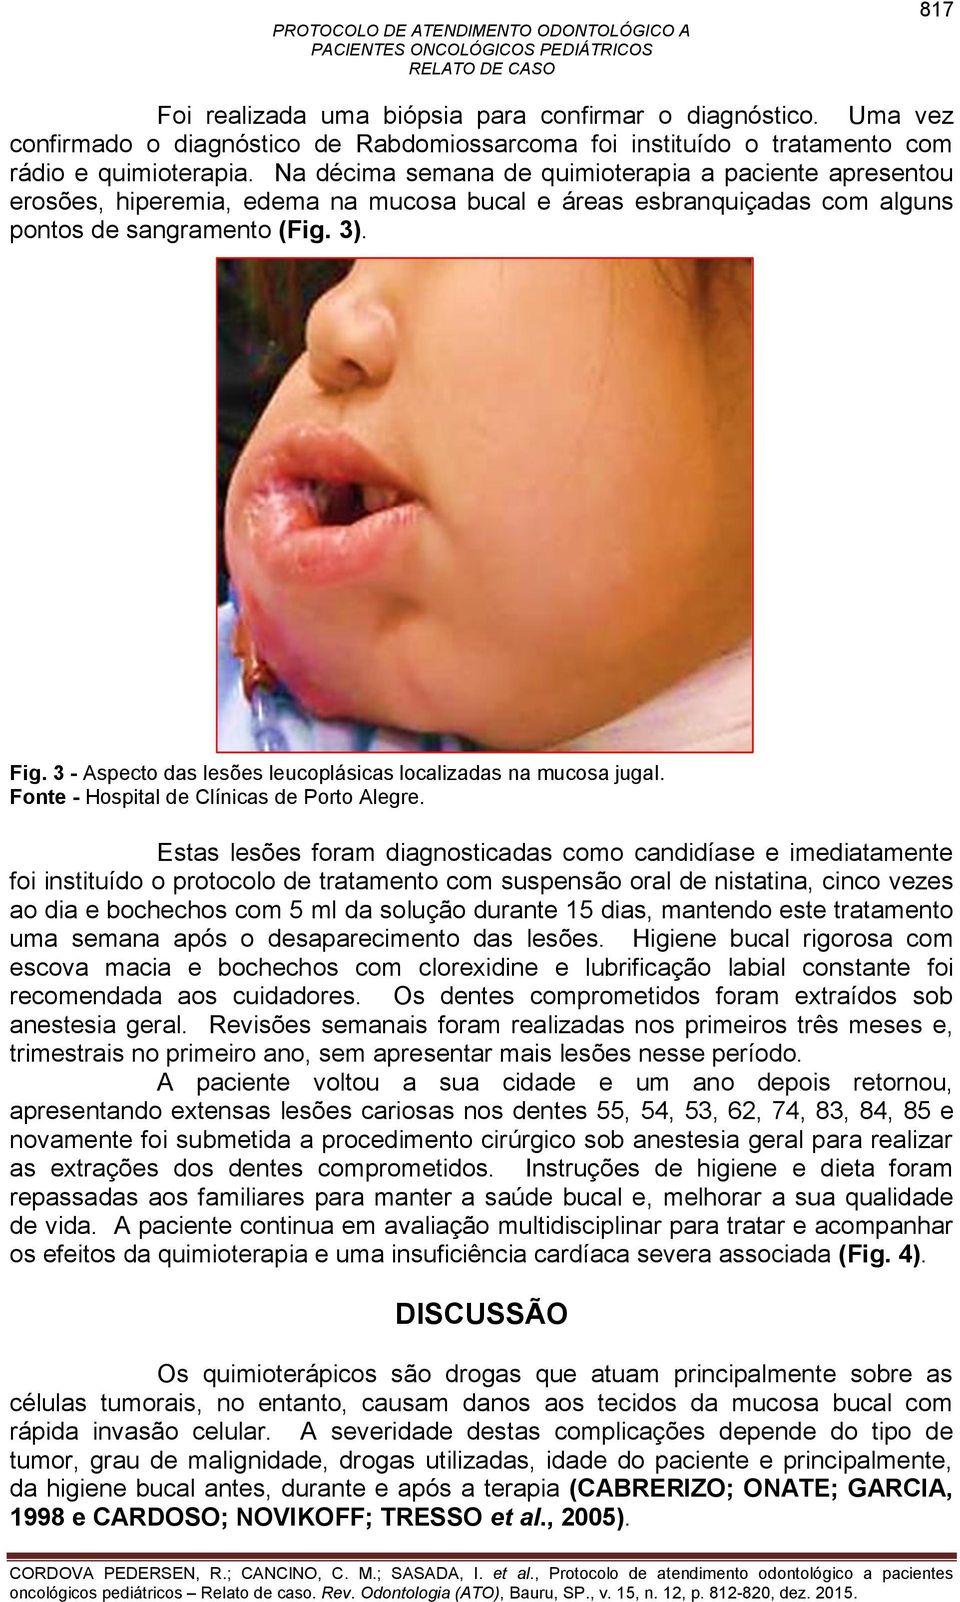 3 - Aspecto das lesões leucoplásicas localizadas na mucosa jugal. Fonte - Hospital de Clínicas de Porto Alegre.